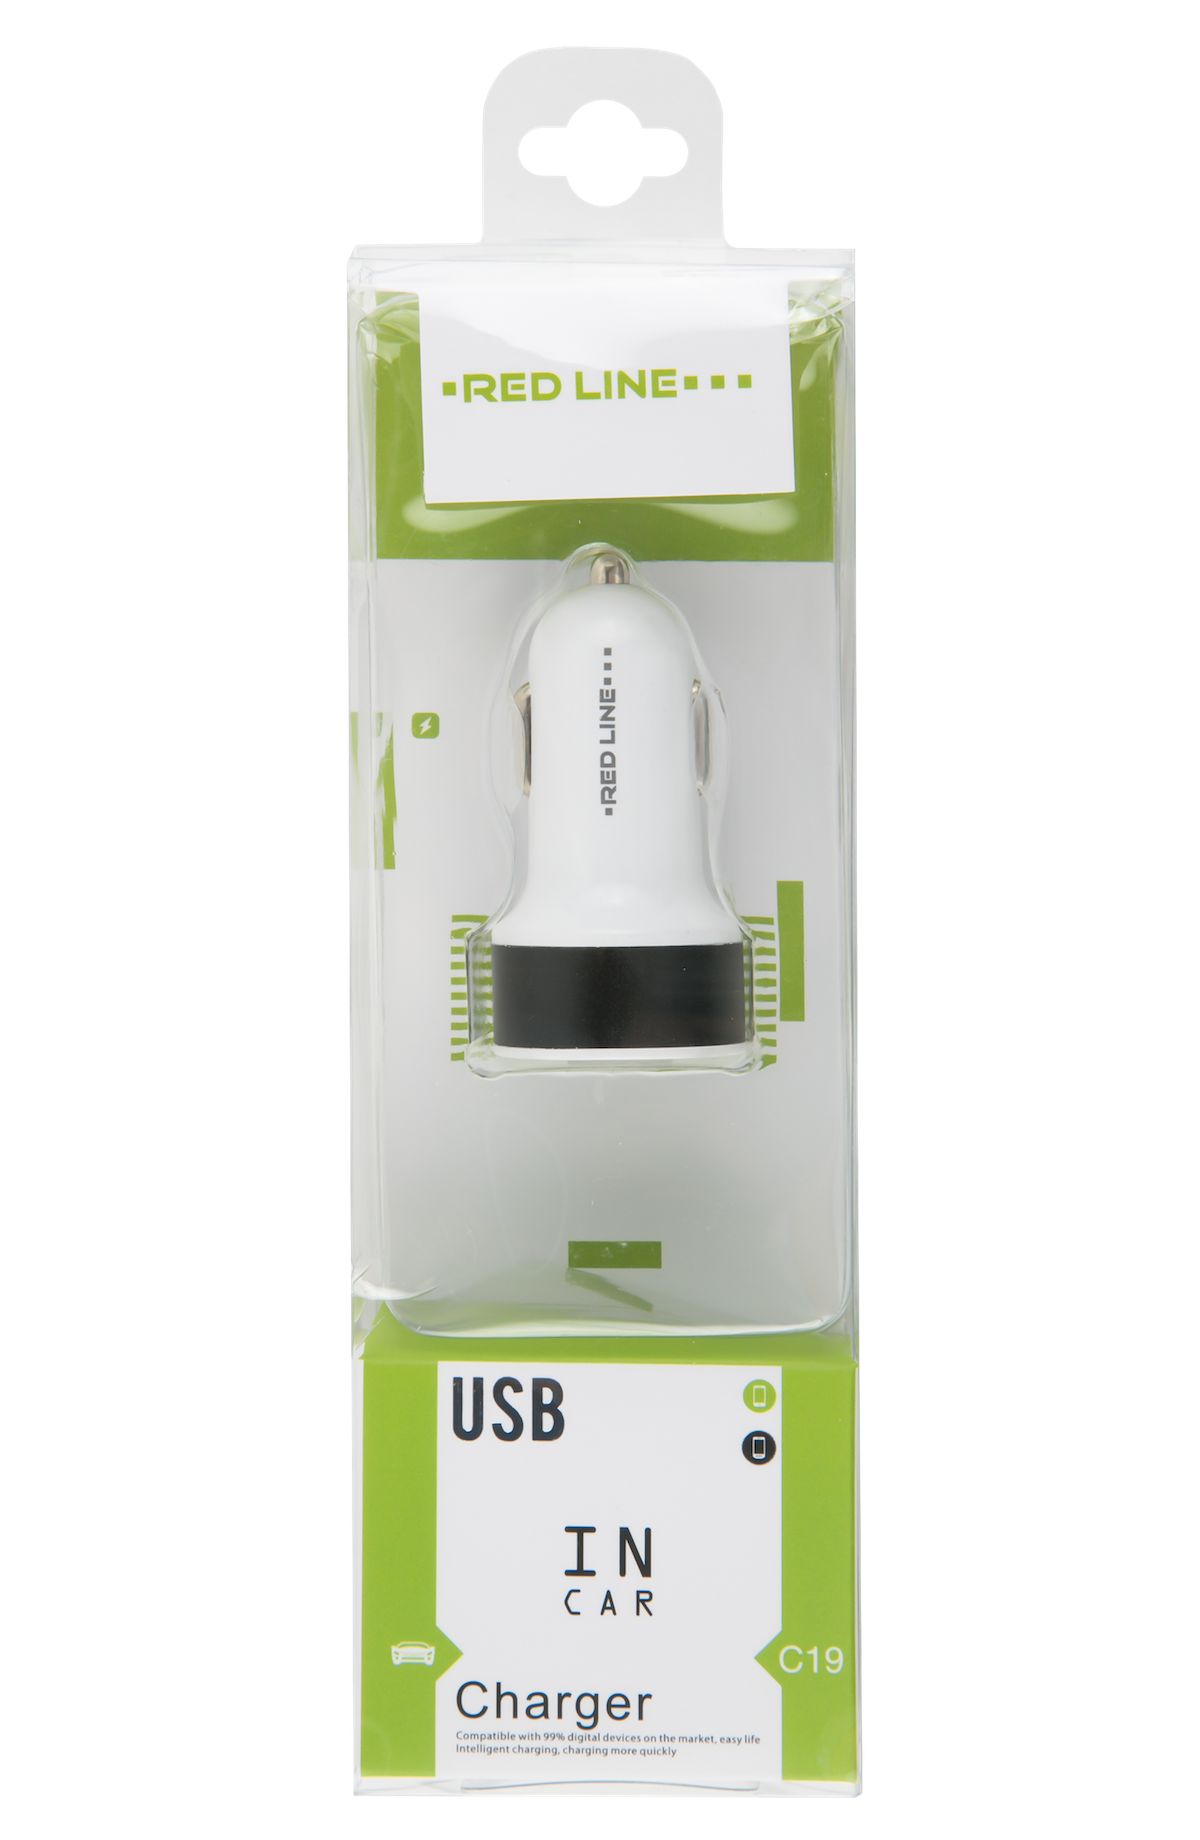 АЗУ Red Line 2 USB (модель C19), 1А